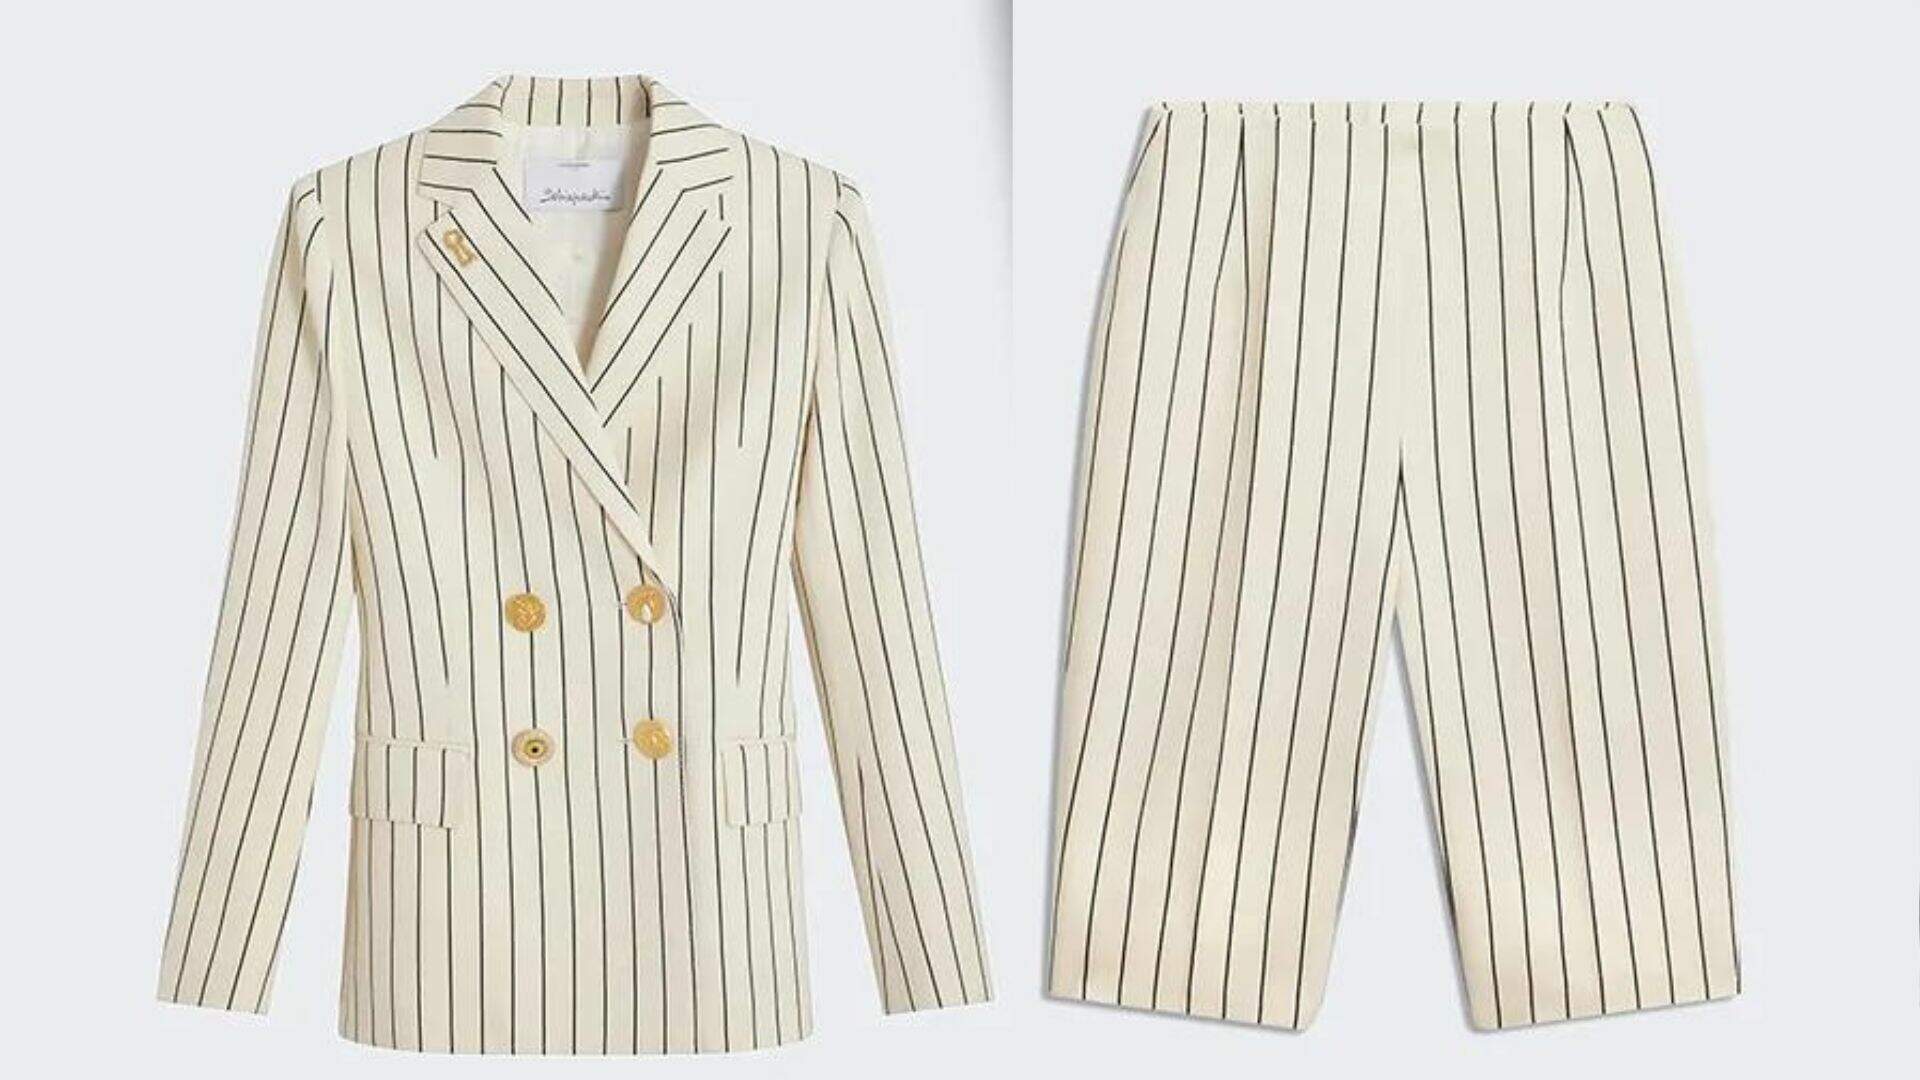 Conjunto de blazer e bermuda Schiaparelli usados por Gkay em evento custam cerca de R$ 36 mil